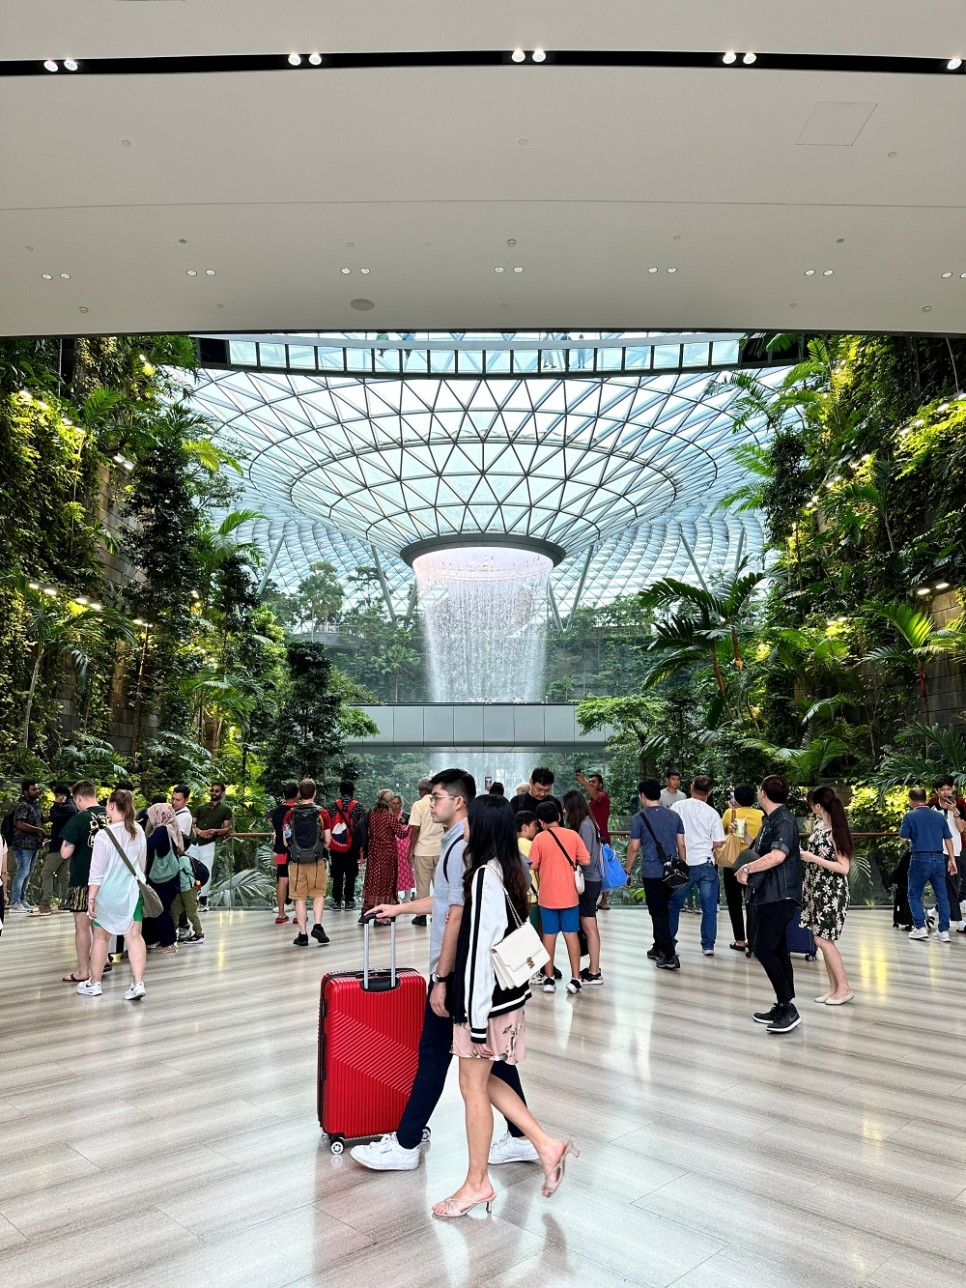 싱가포르 여행 창이 공항 안에 이런 멋진 여행코스가 쥬얼창이